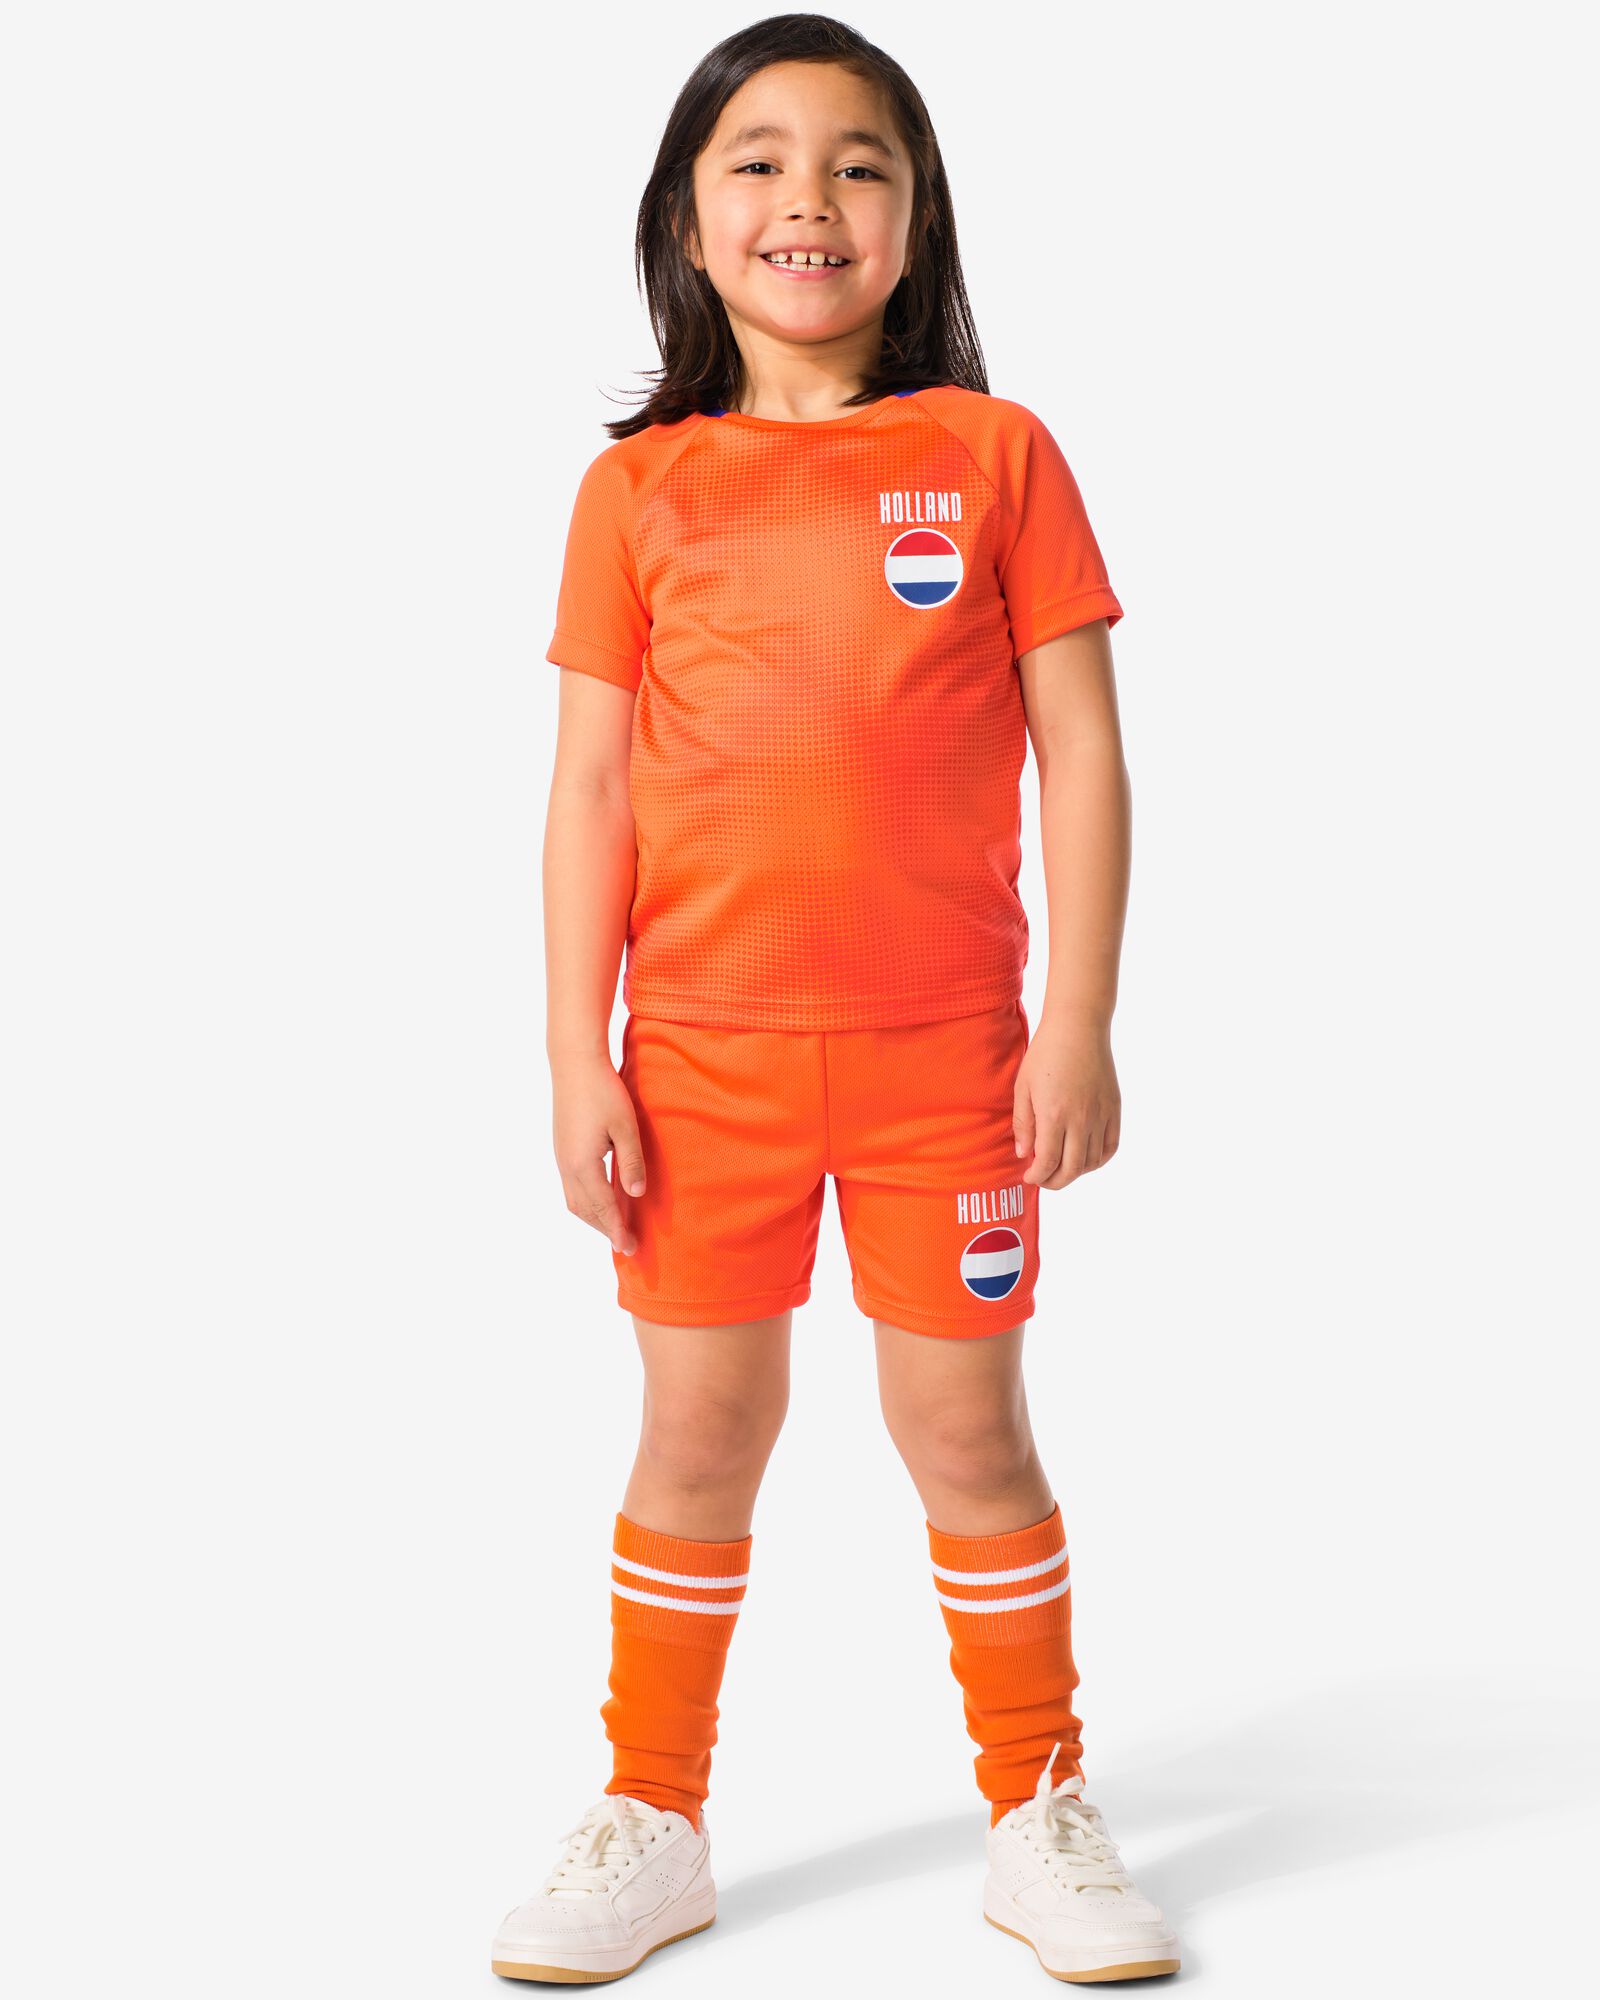 kinder korte sportbroek Nederland oranje 74/80 - 36005105 - HEMA